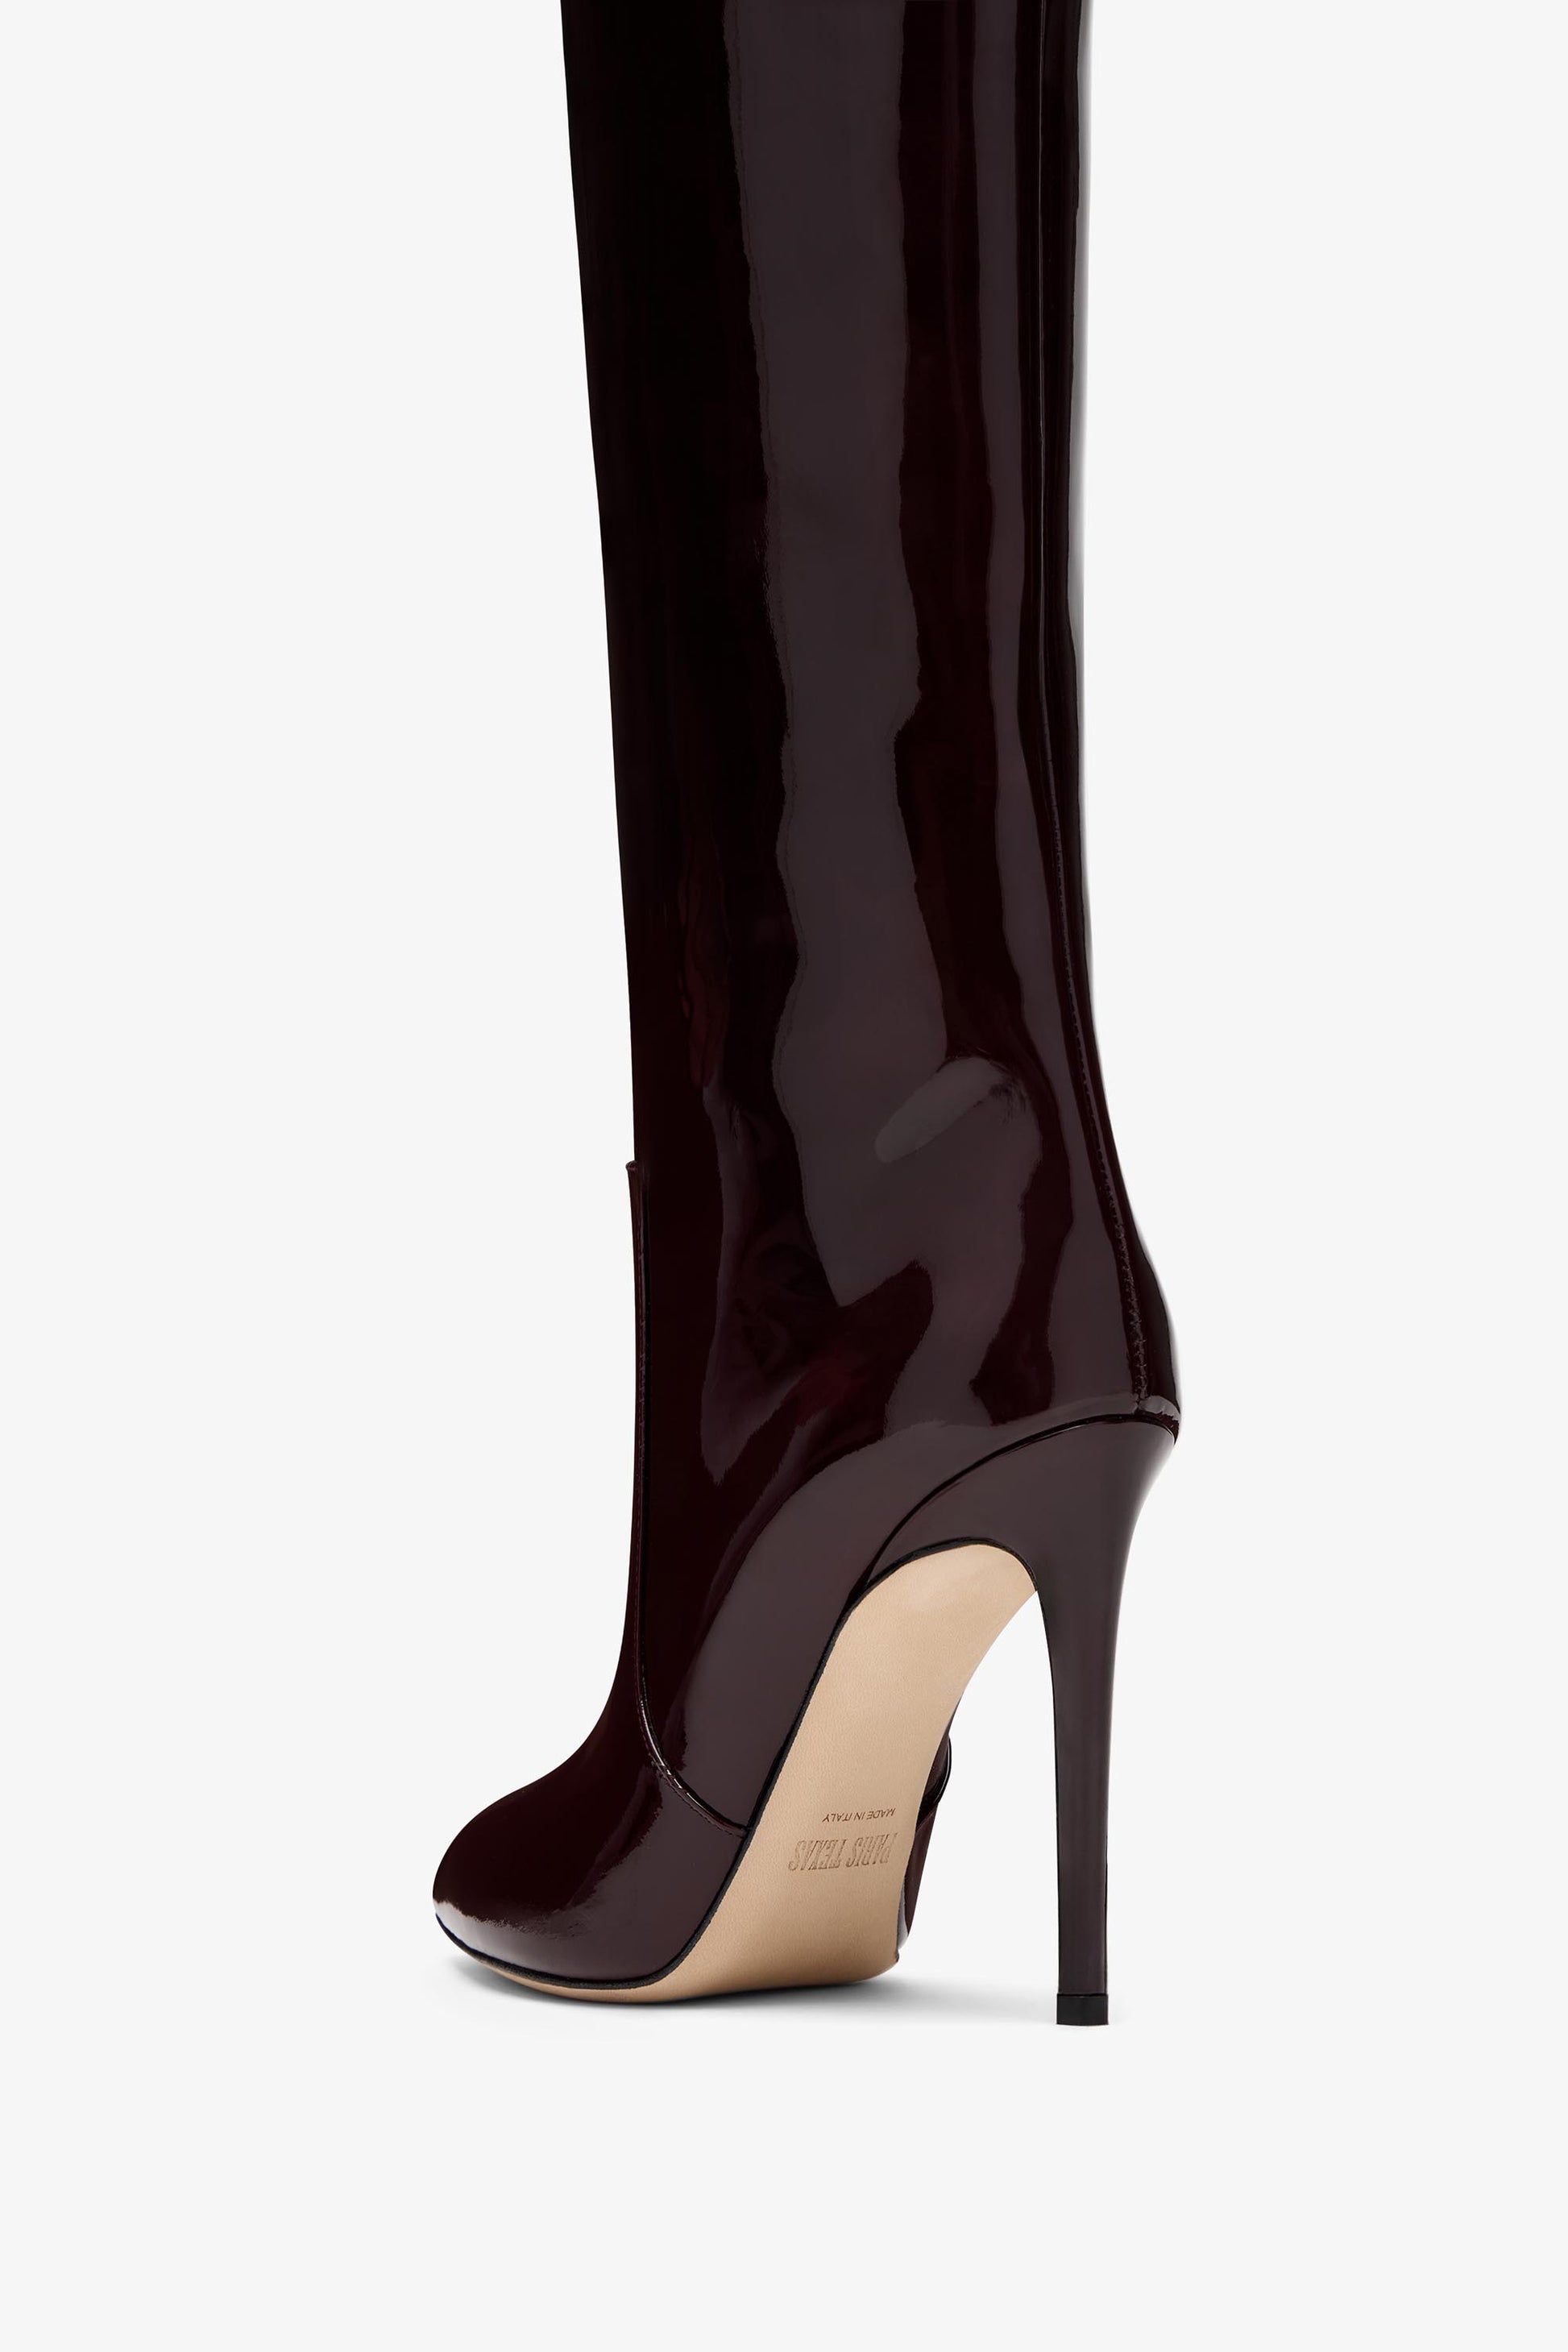 Rouge noir patent stiletto boots